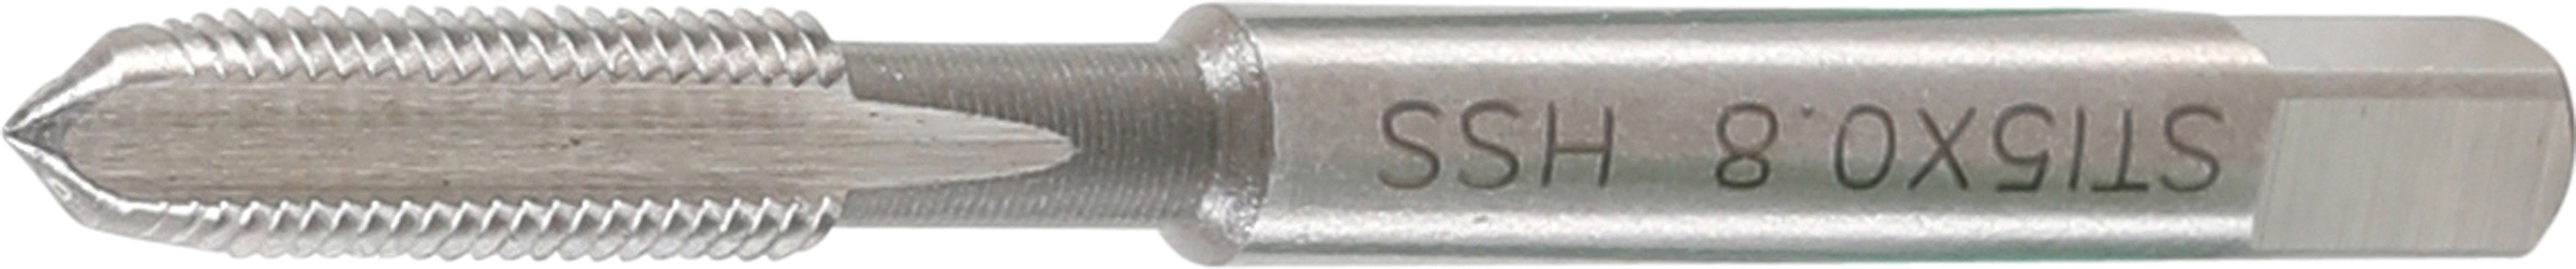 STI-Gewindebohrer | HSS-G | M5 x 0,8 - BGS 1952-3